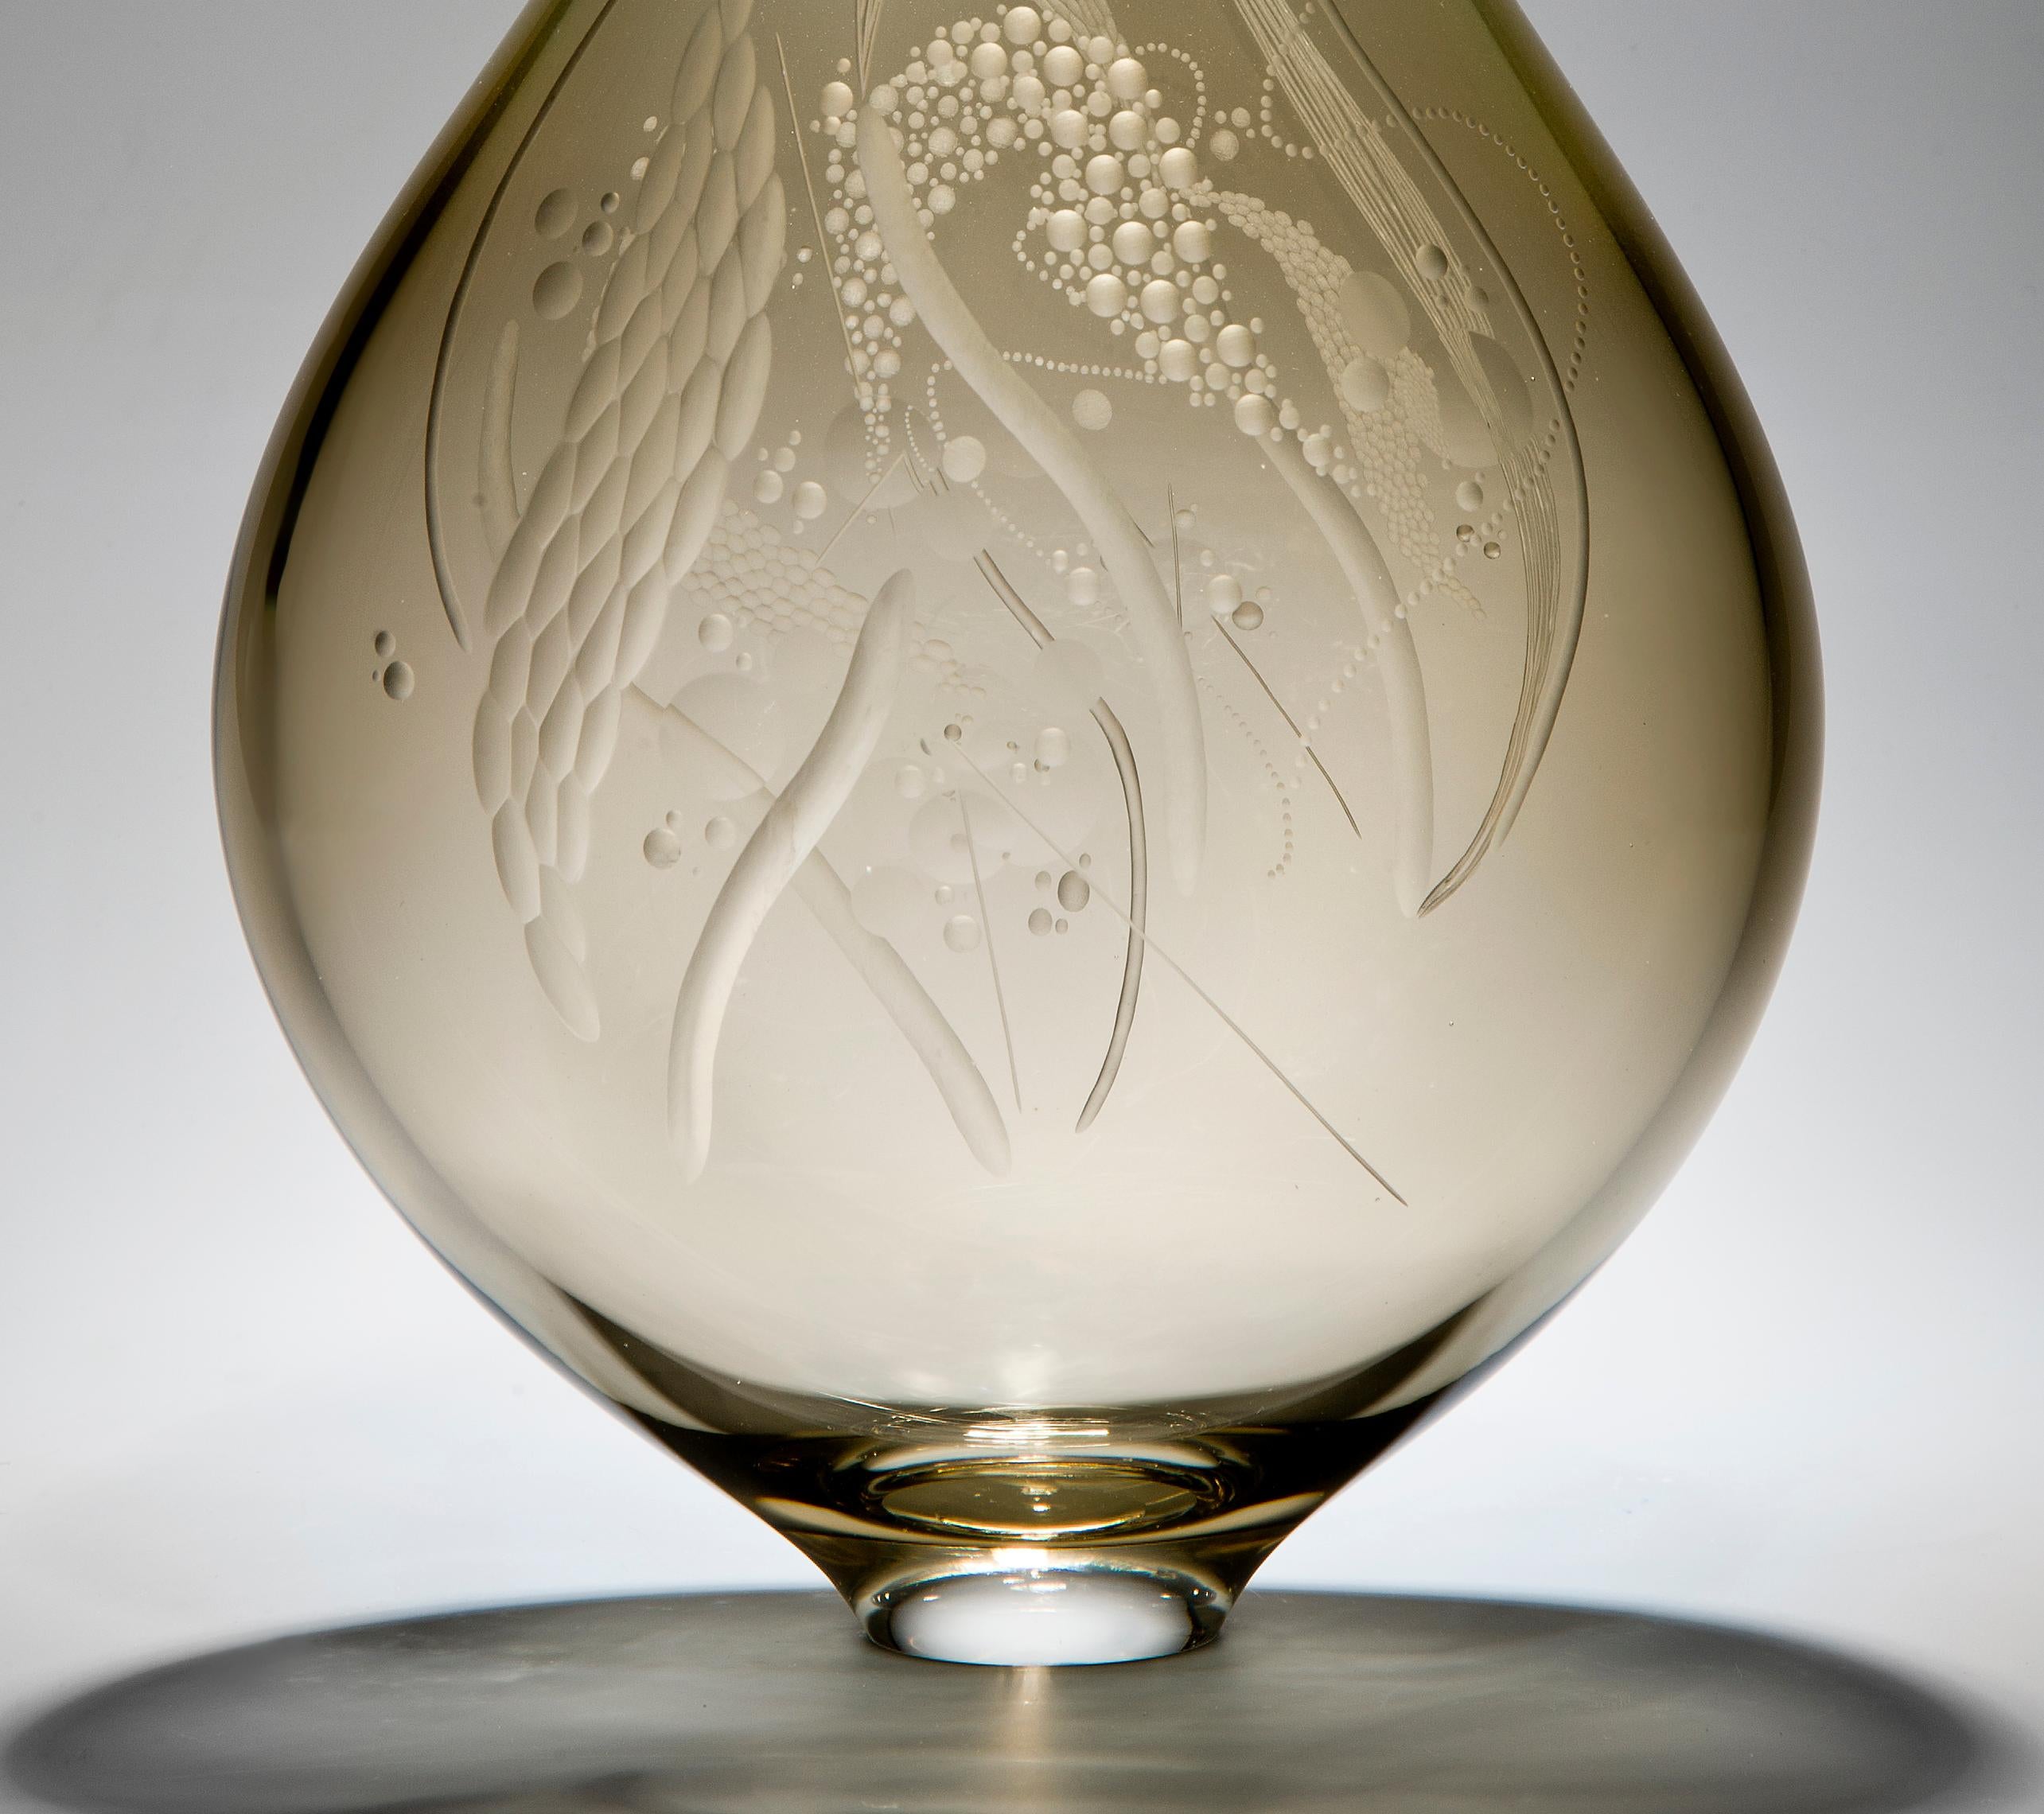 British Mariniere Vase, a unique bronze engraved glass sculpture by Heather Gillespie